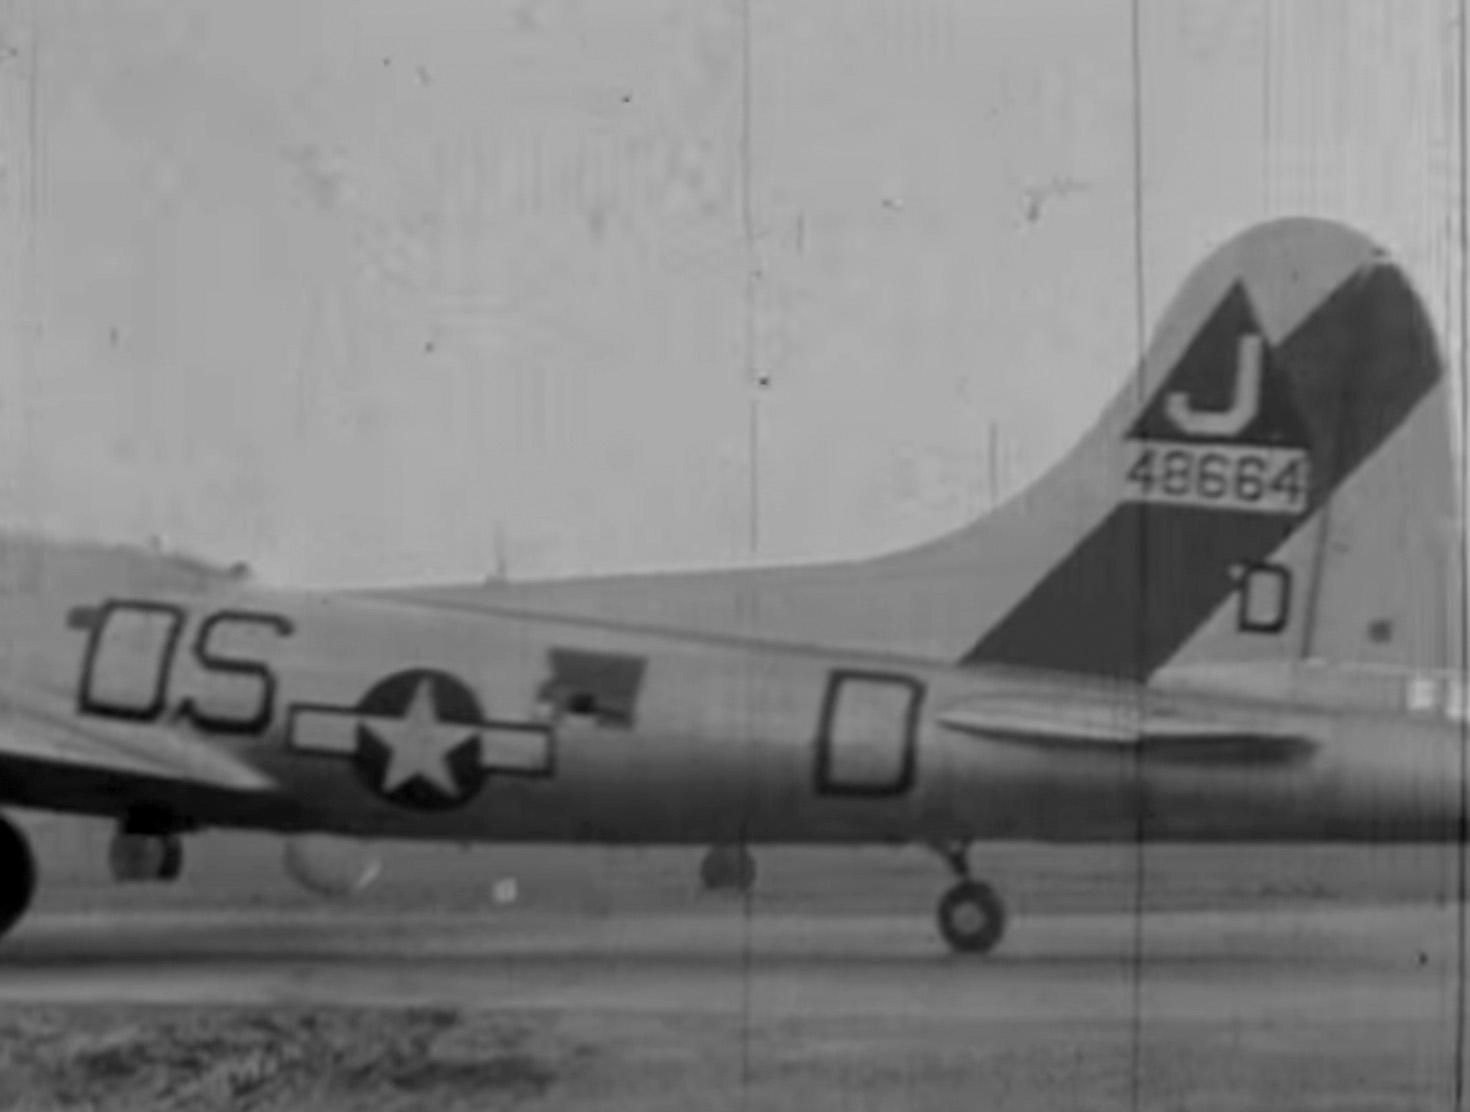 B-17 #44-8664